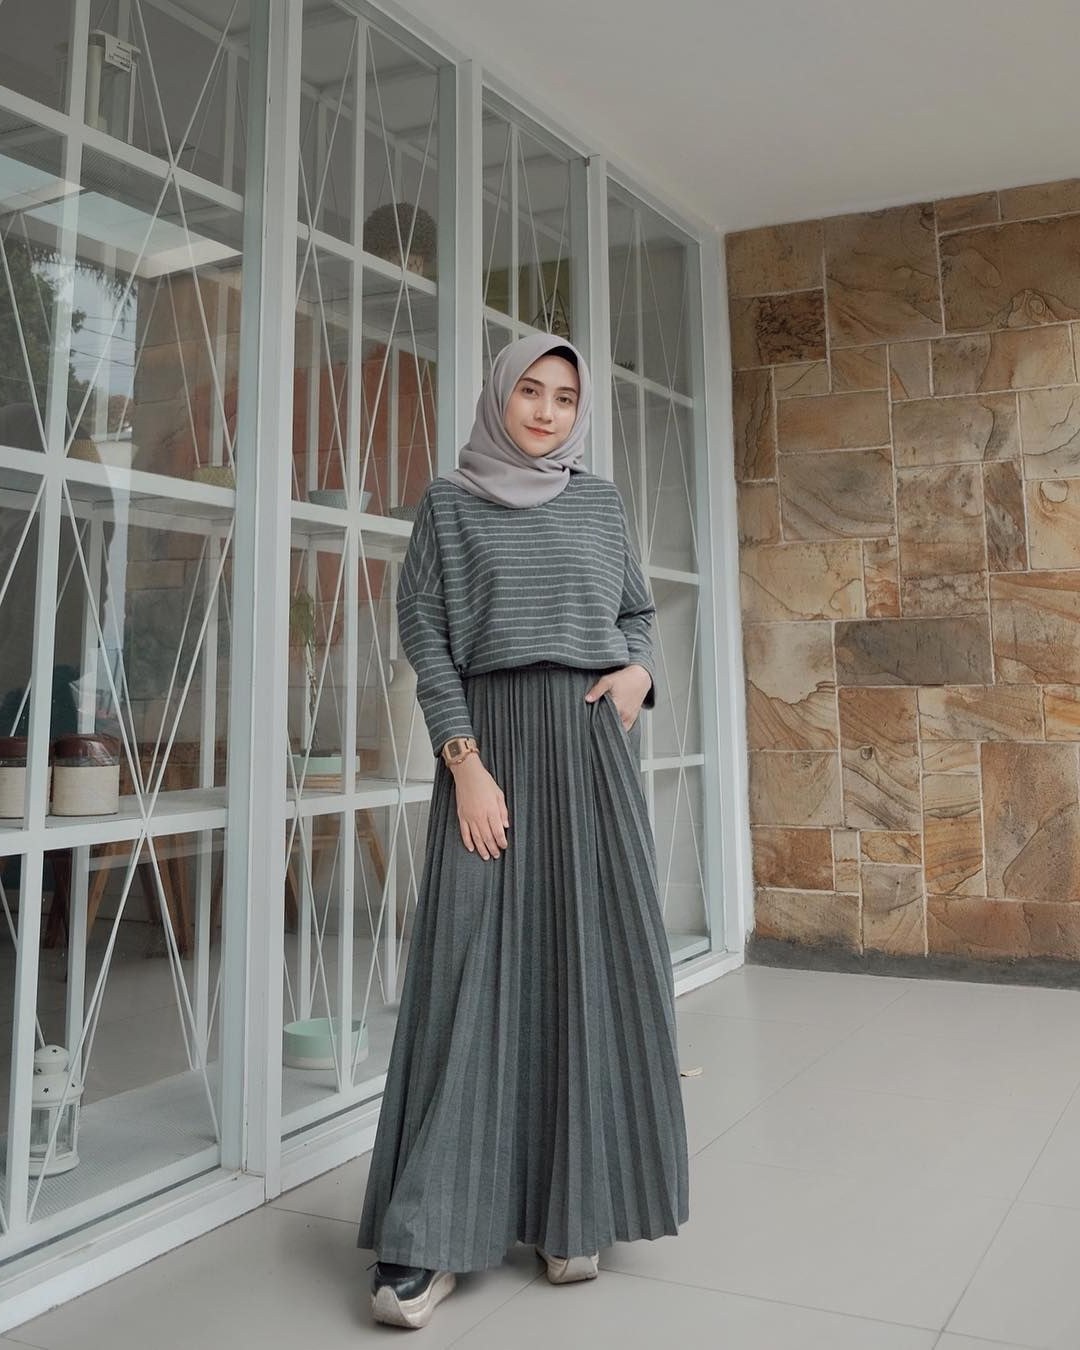 Model Model Baju Lebaran 2019 Wanita Wddj Baju Muslim Lebaran Terbaru 2019 Dengan Gambar